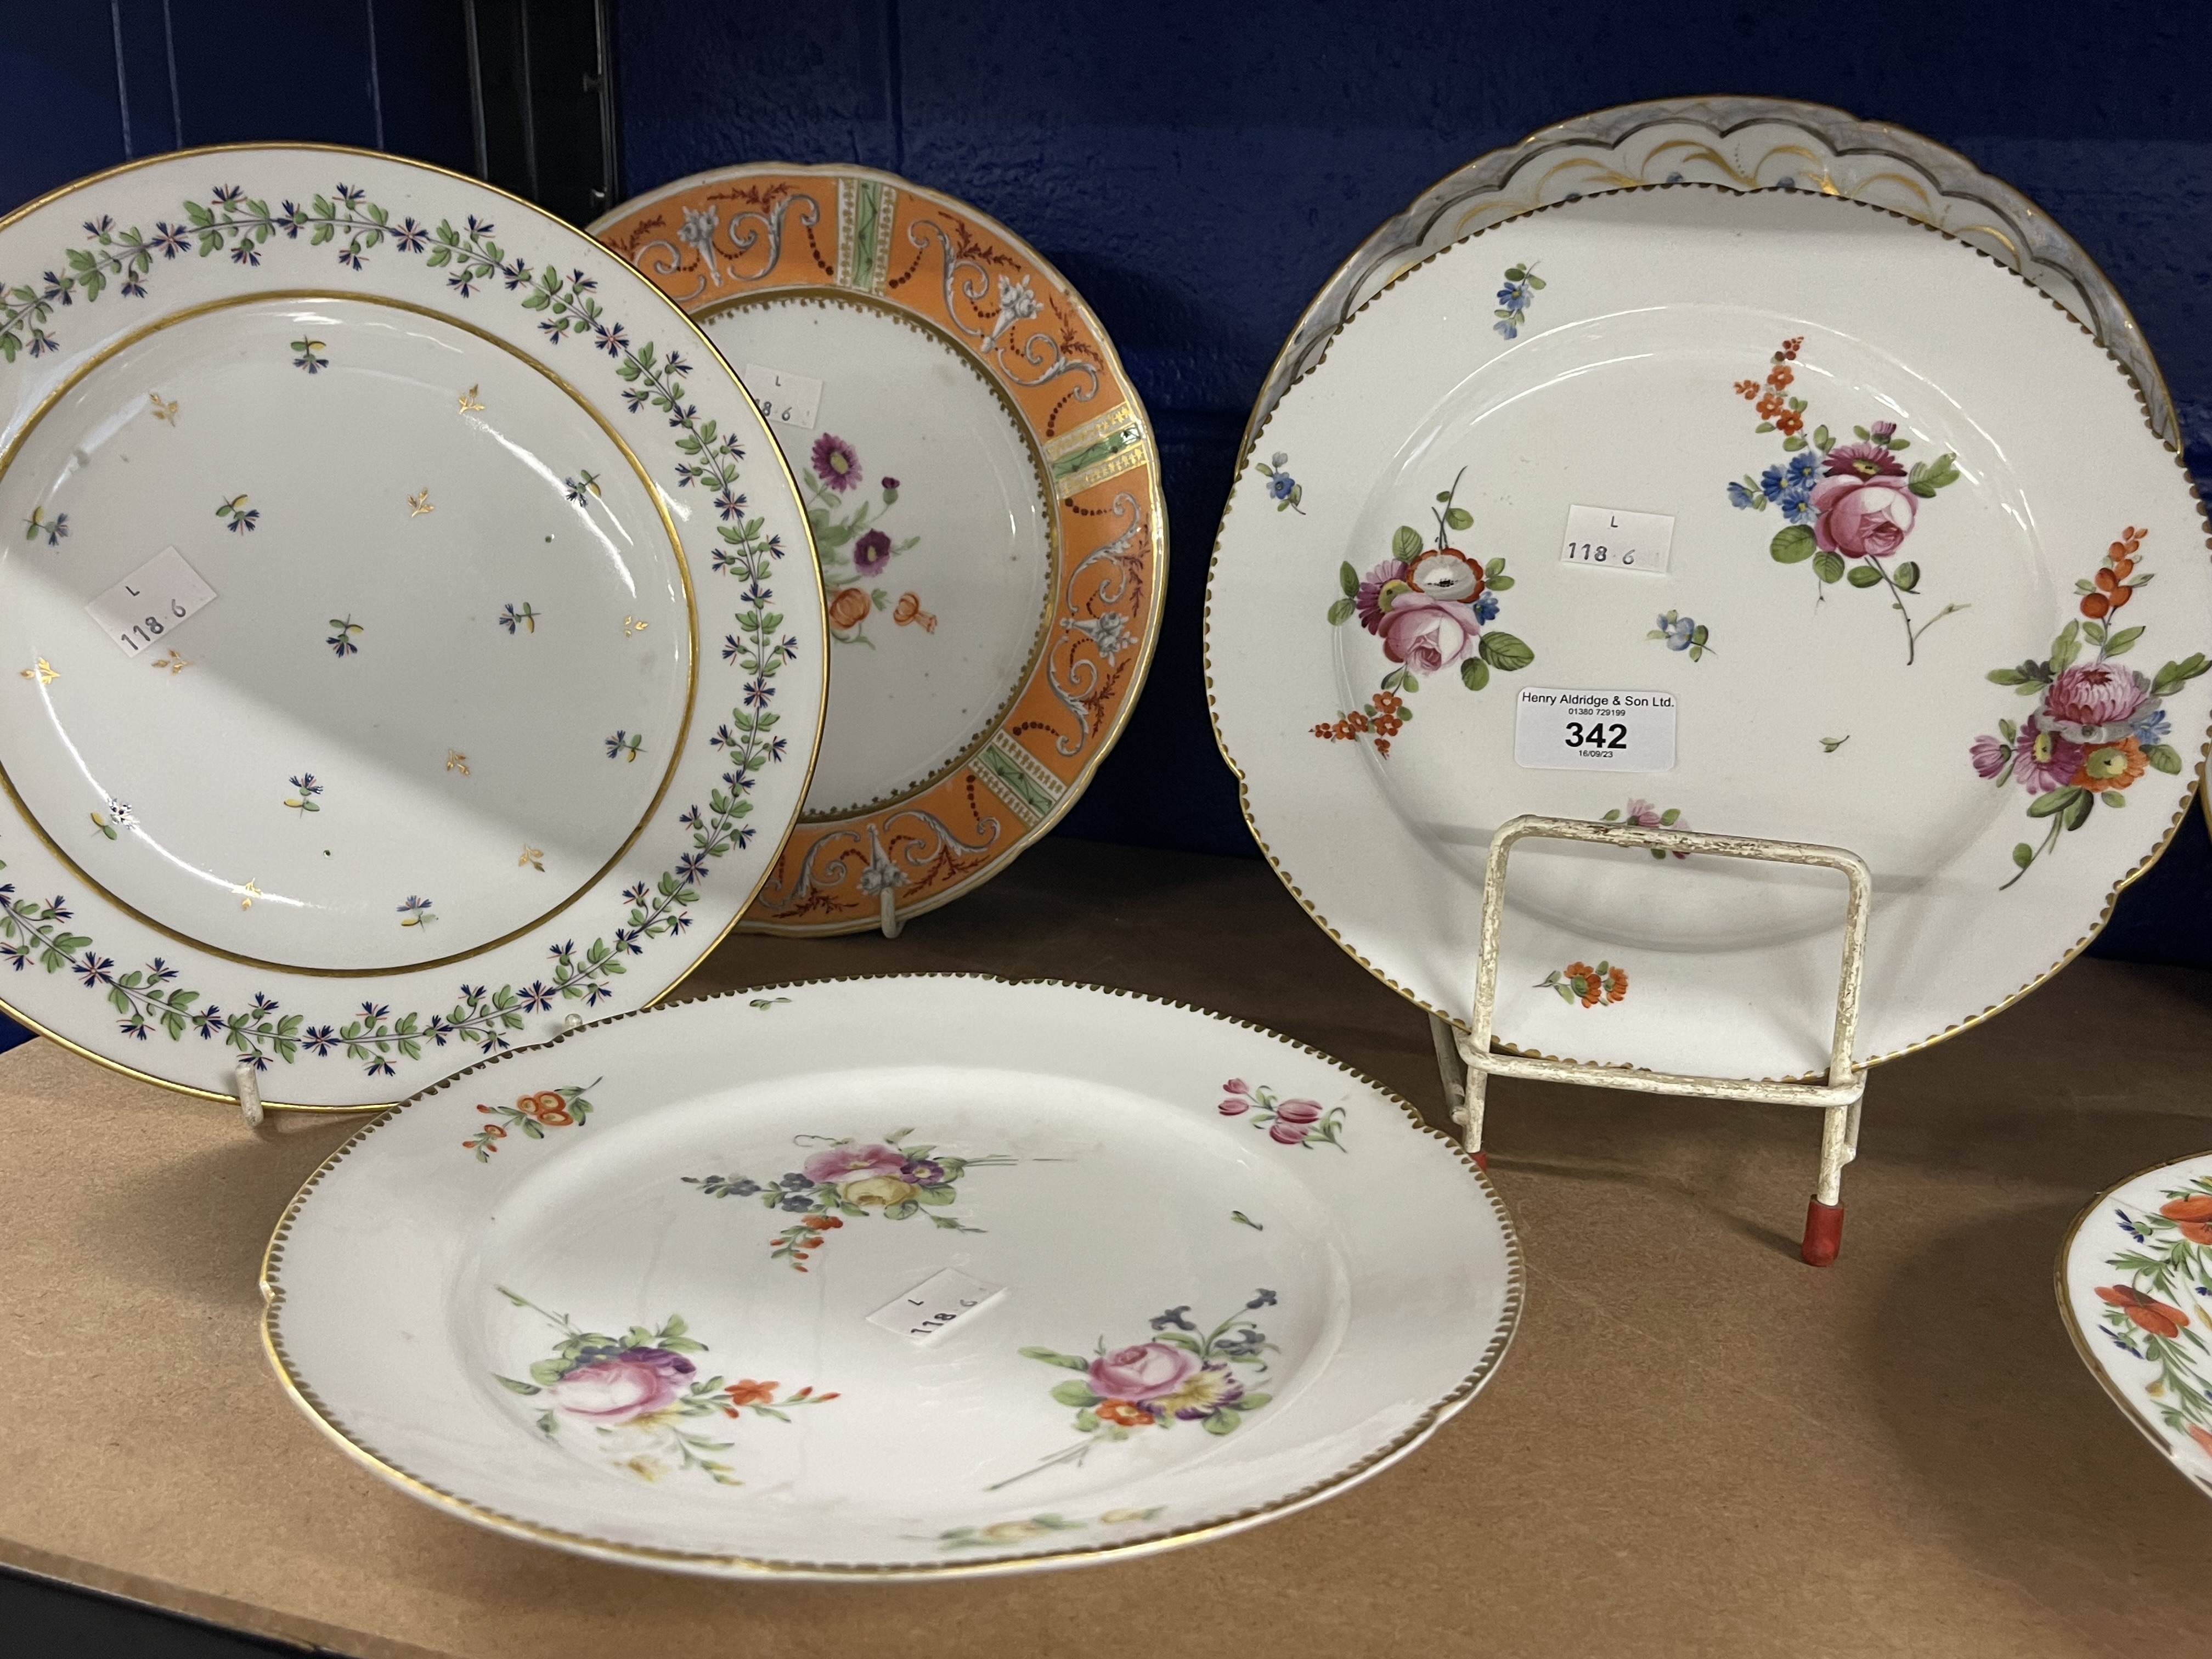 Late 18th/19th cent. Paris porcelain plates, including Dihl et Duerhard, Bordeaux, rue de Petit - Image 3 of 3